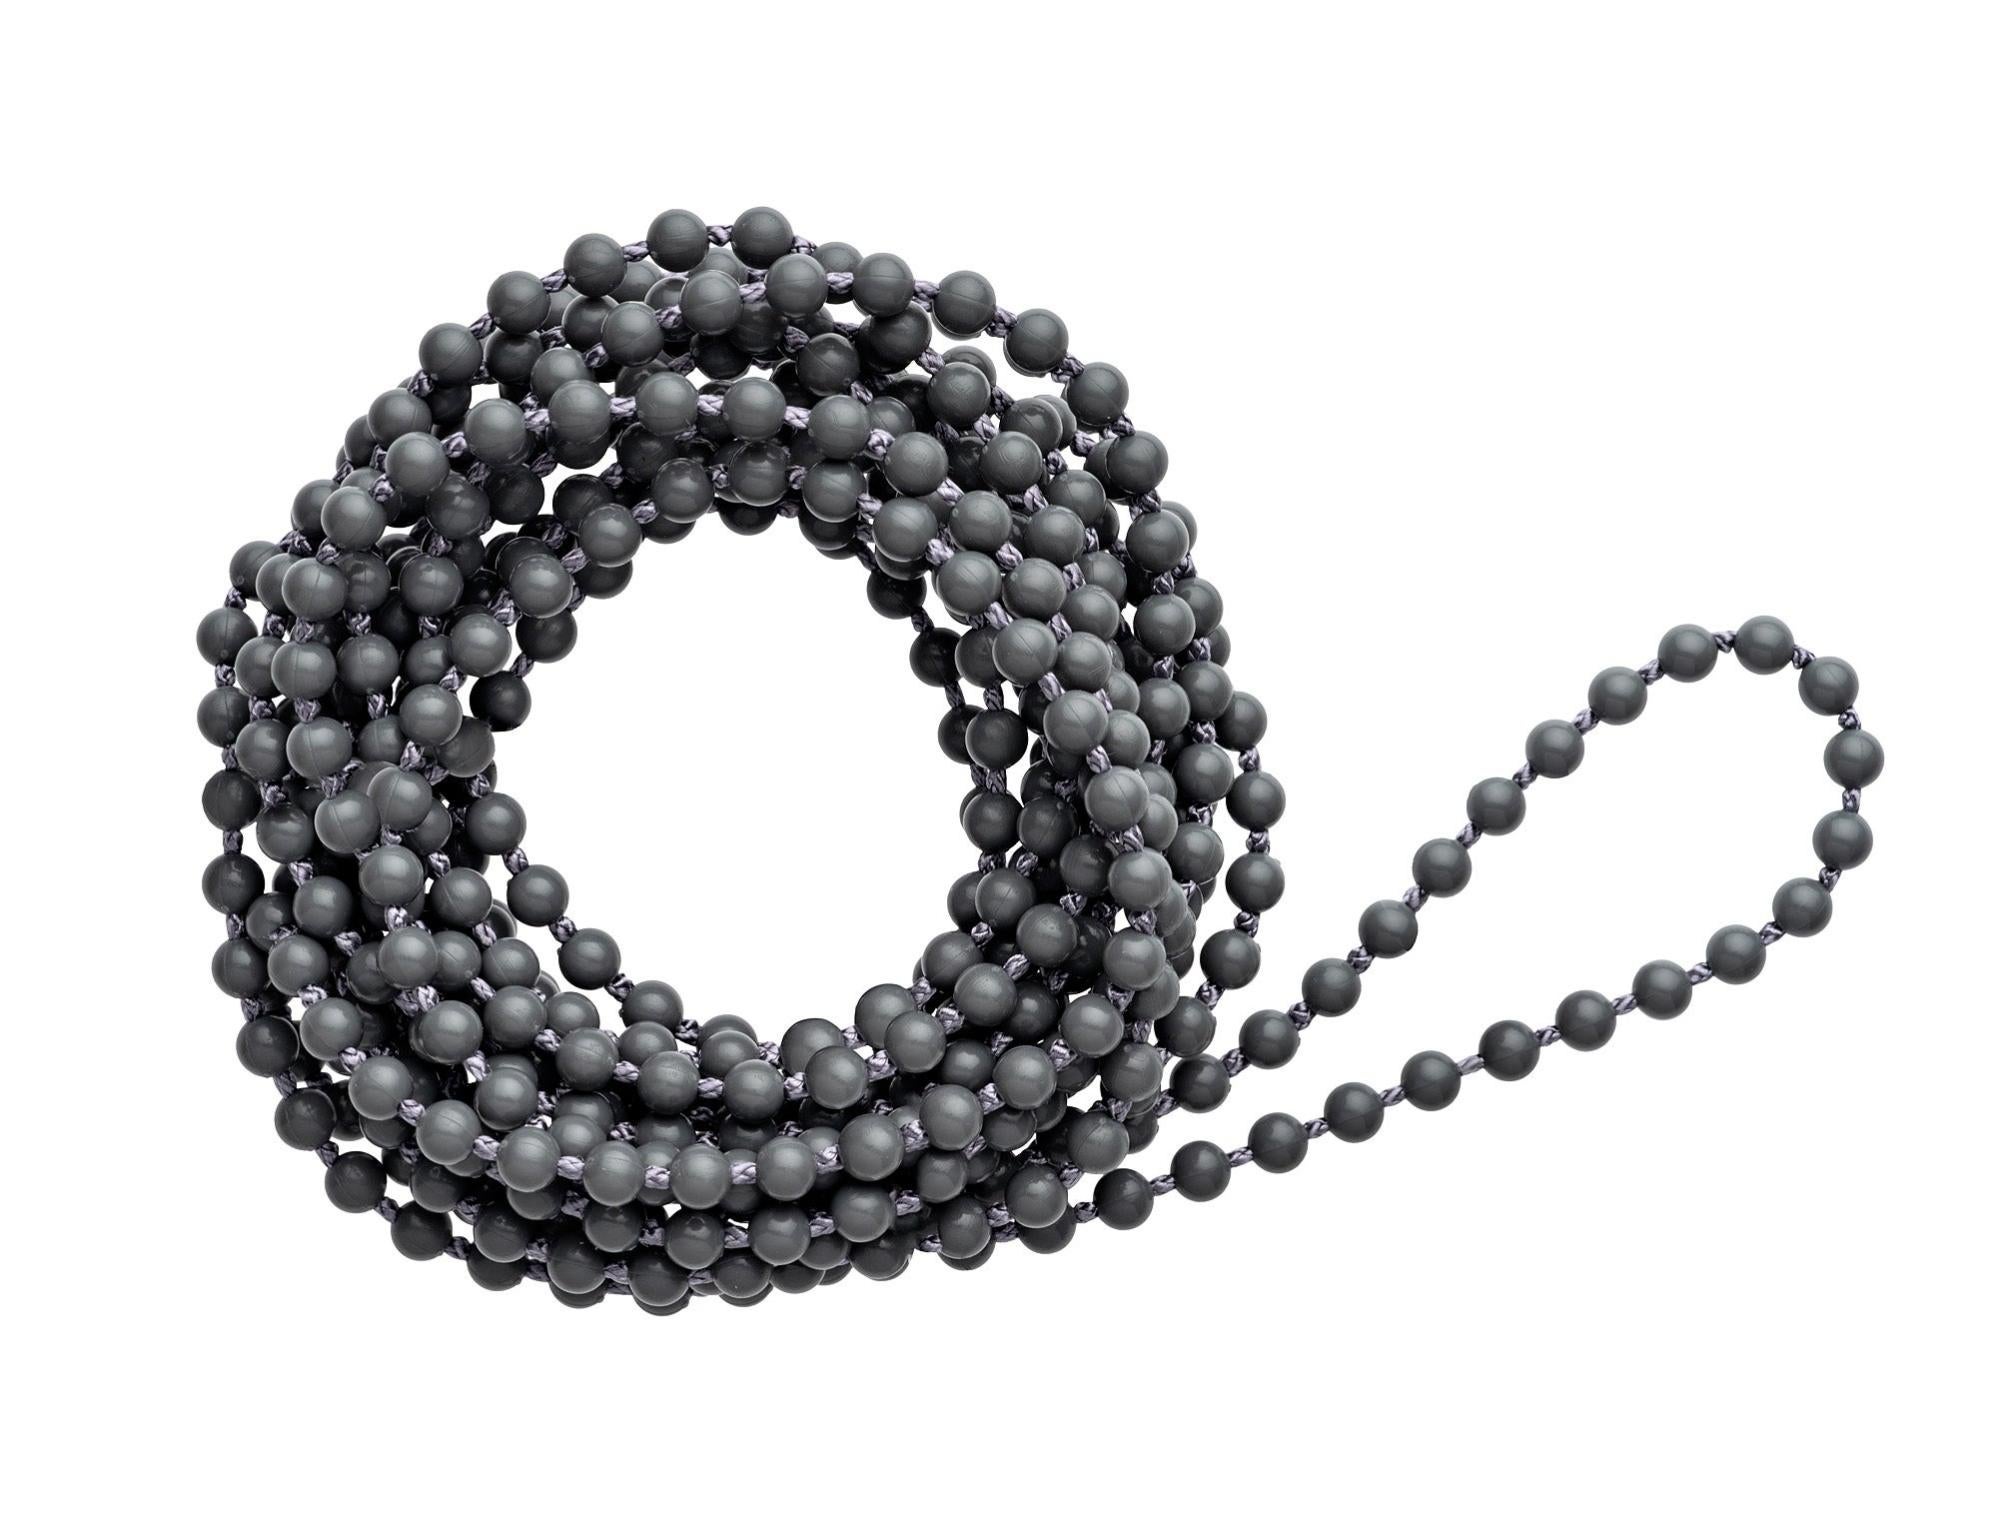 Anillo cadena 1,5 m gris oscuro compatible estores enrollables